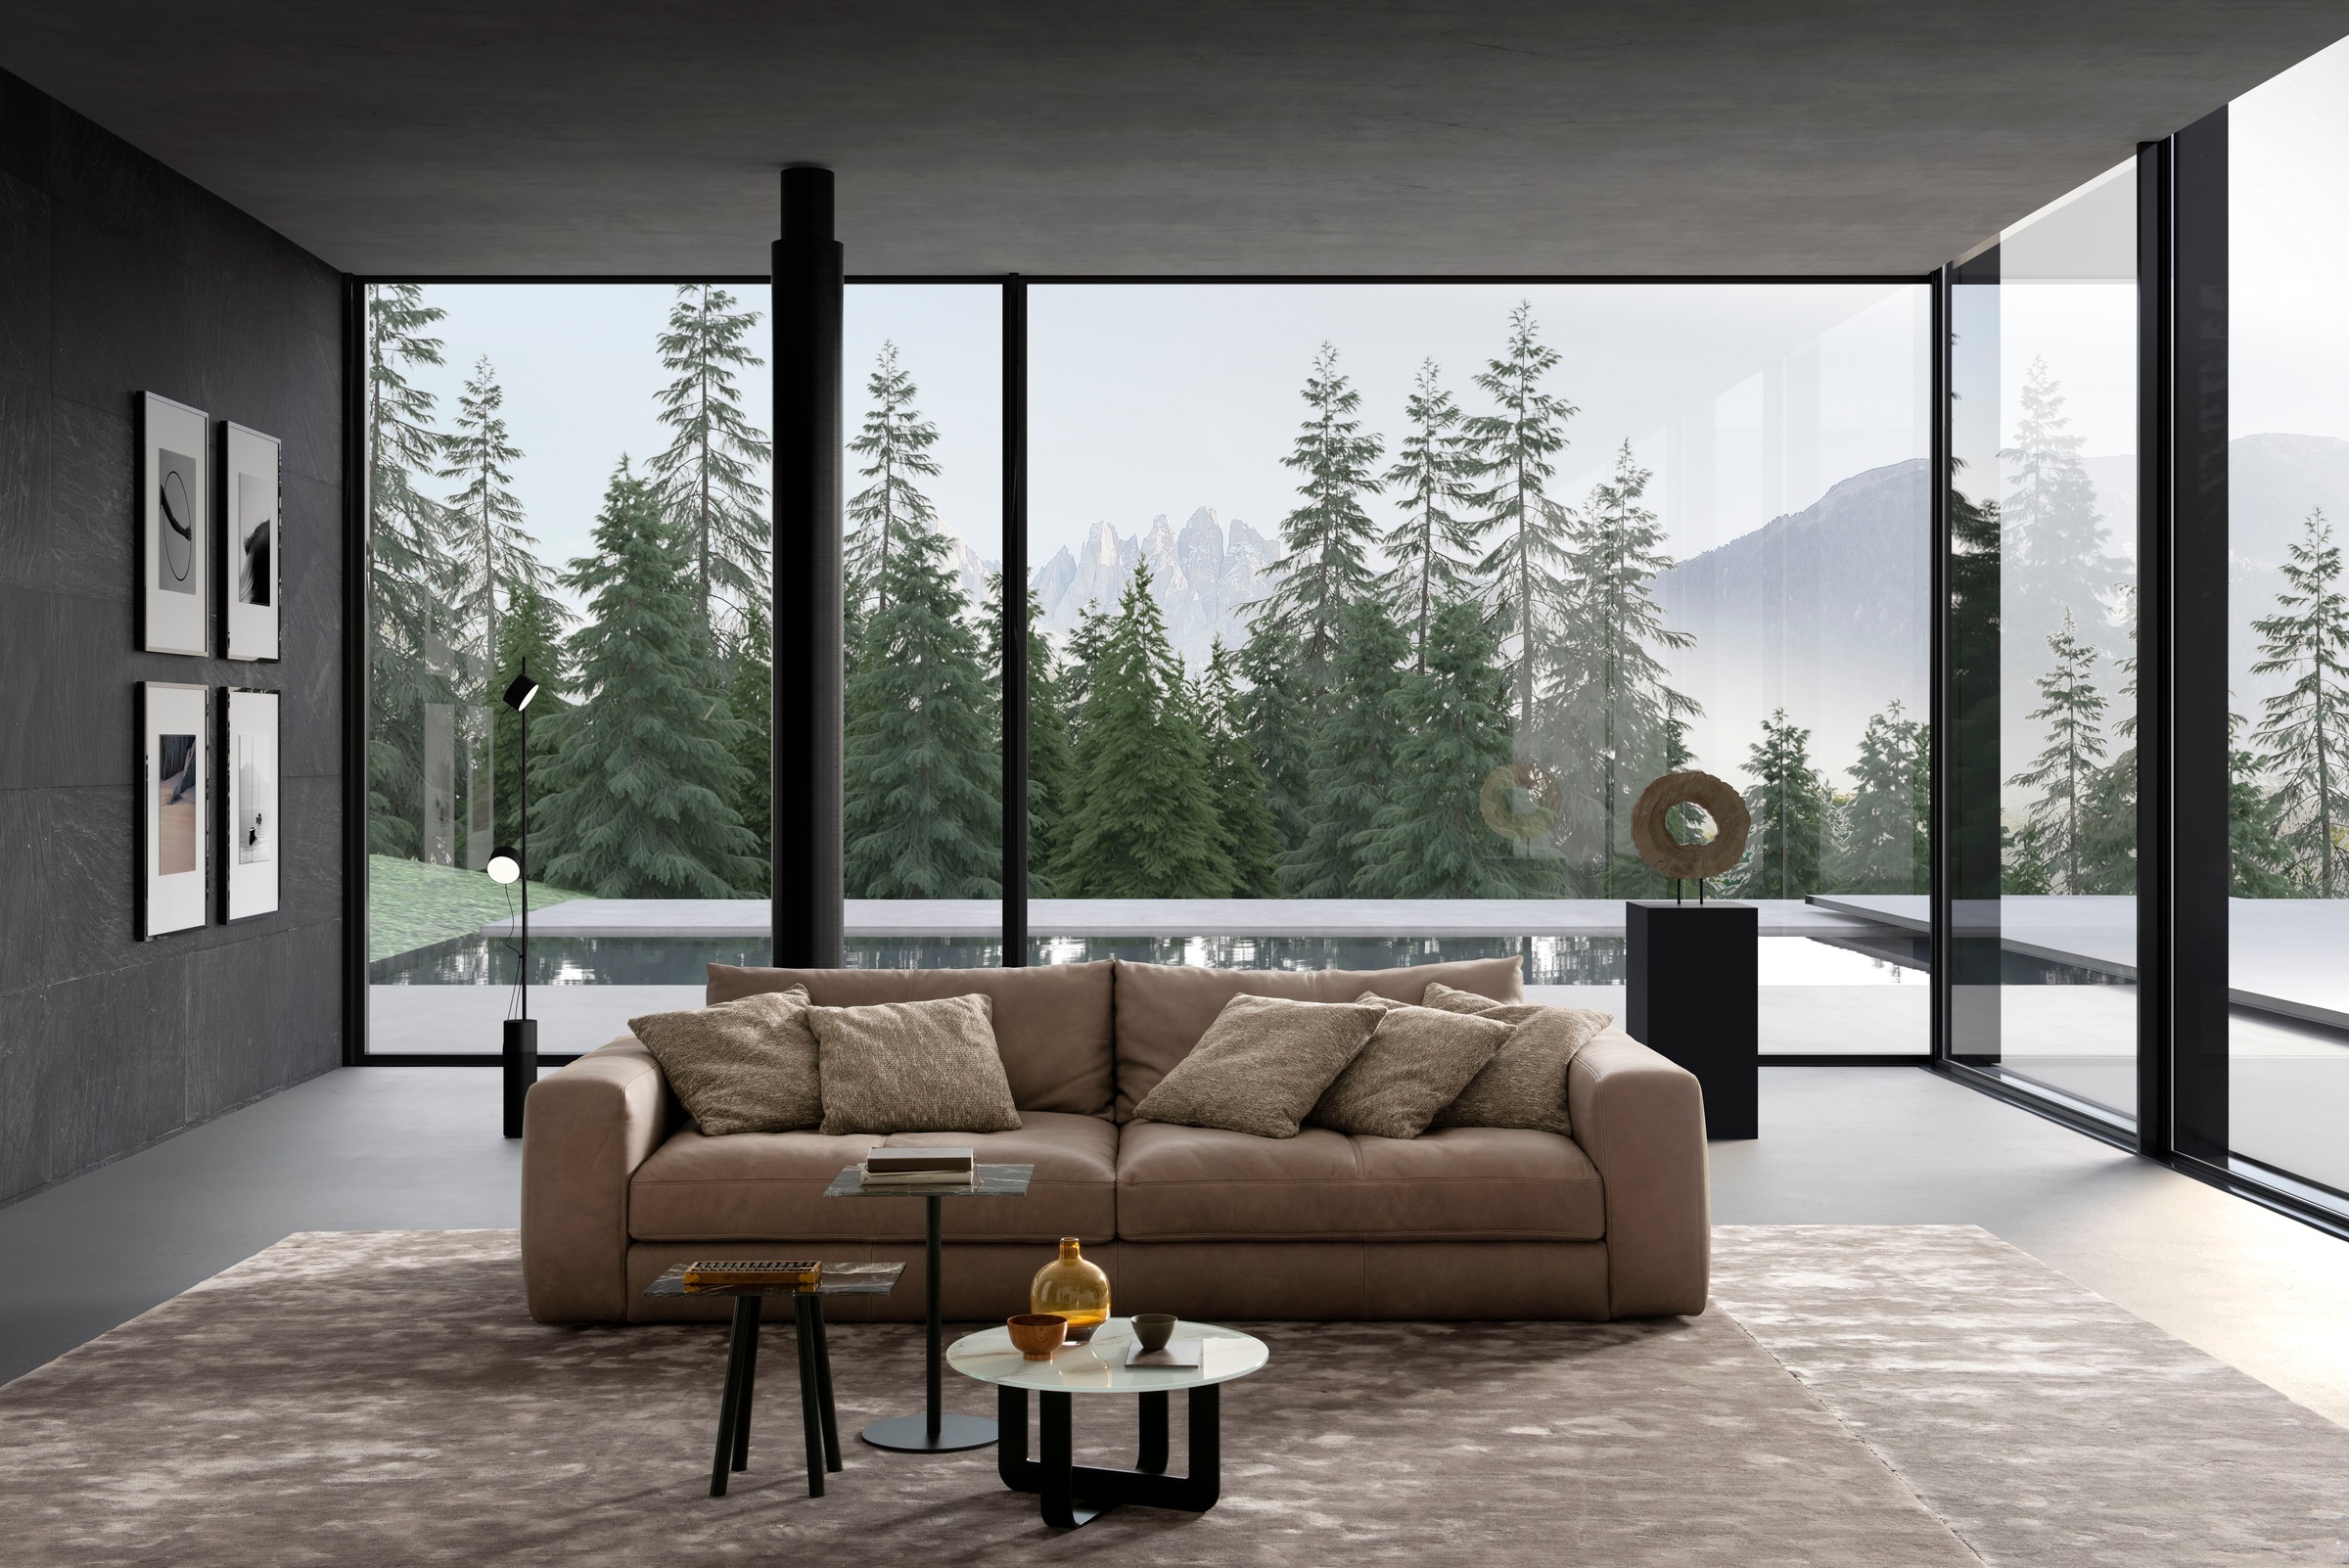 designwerk Big-Sofa »Parma«